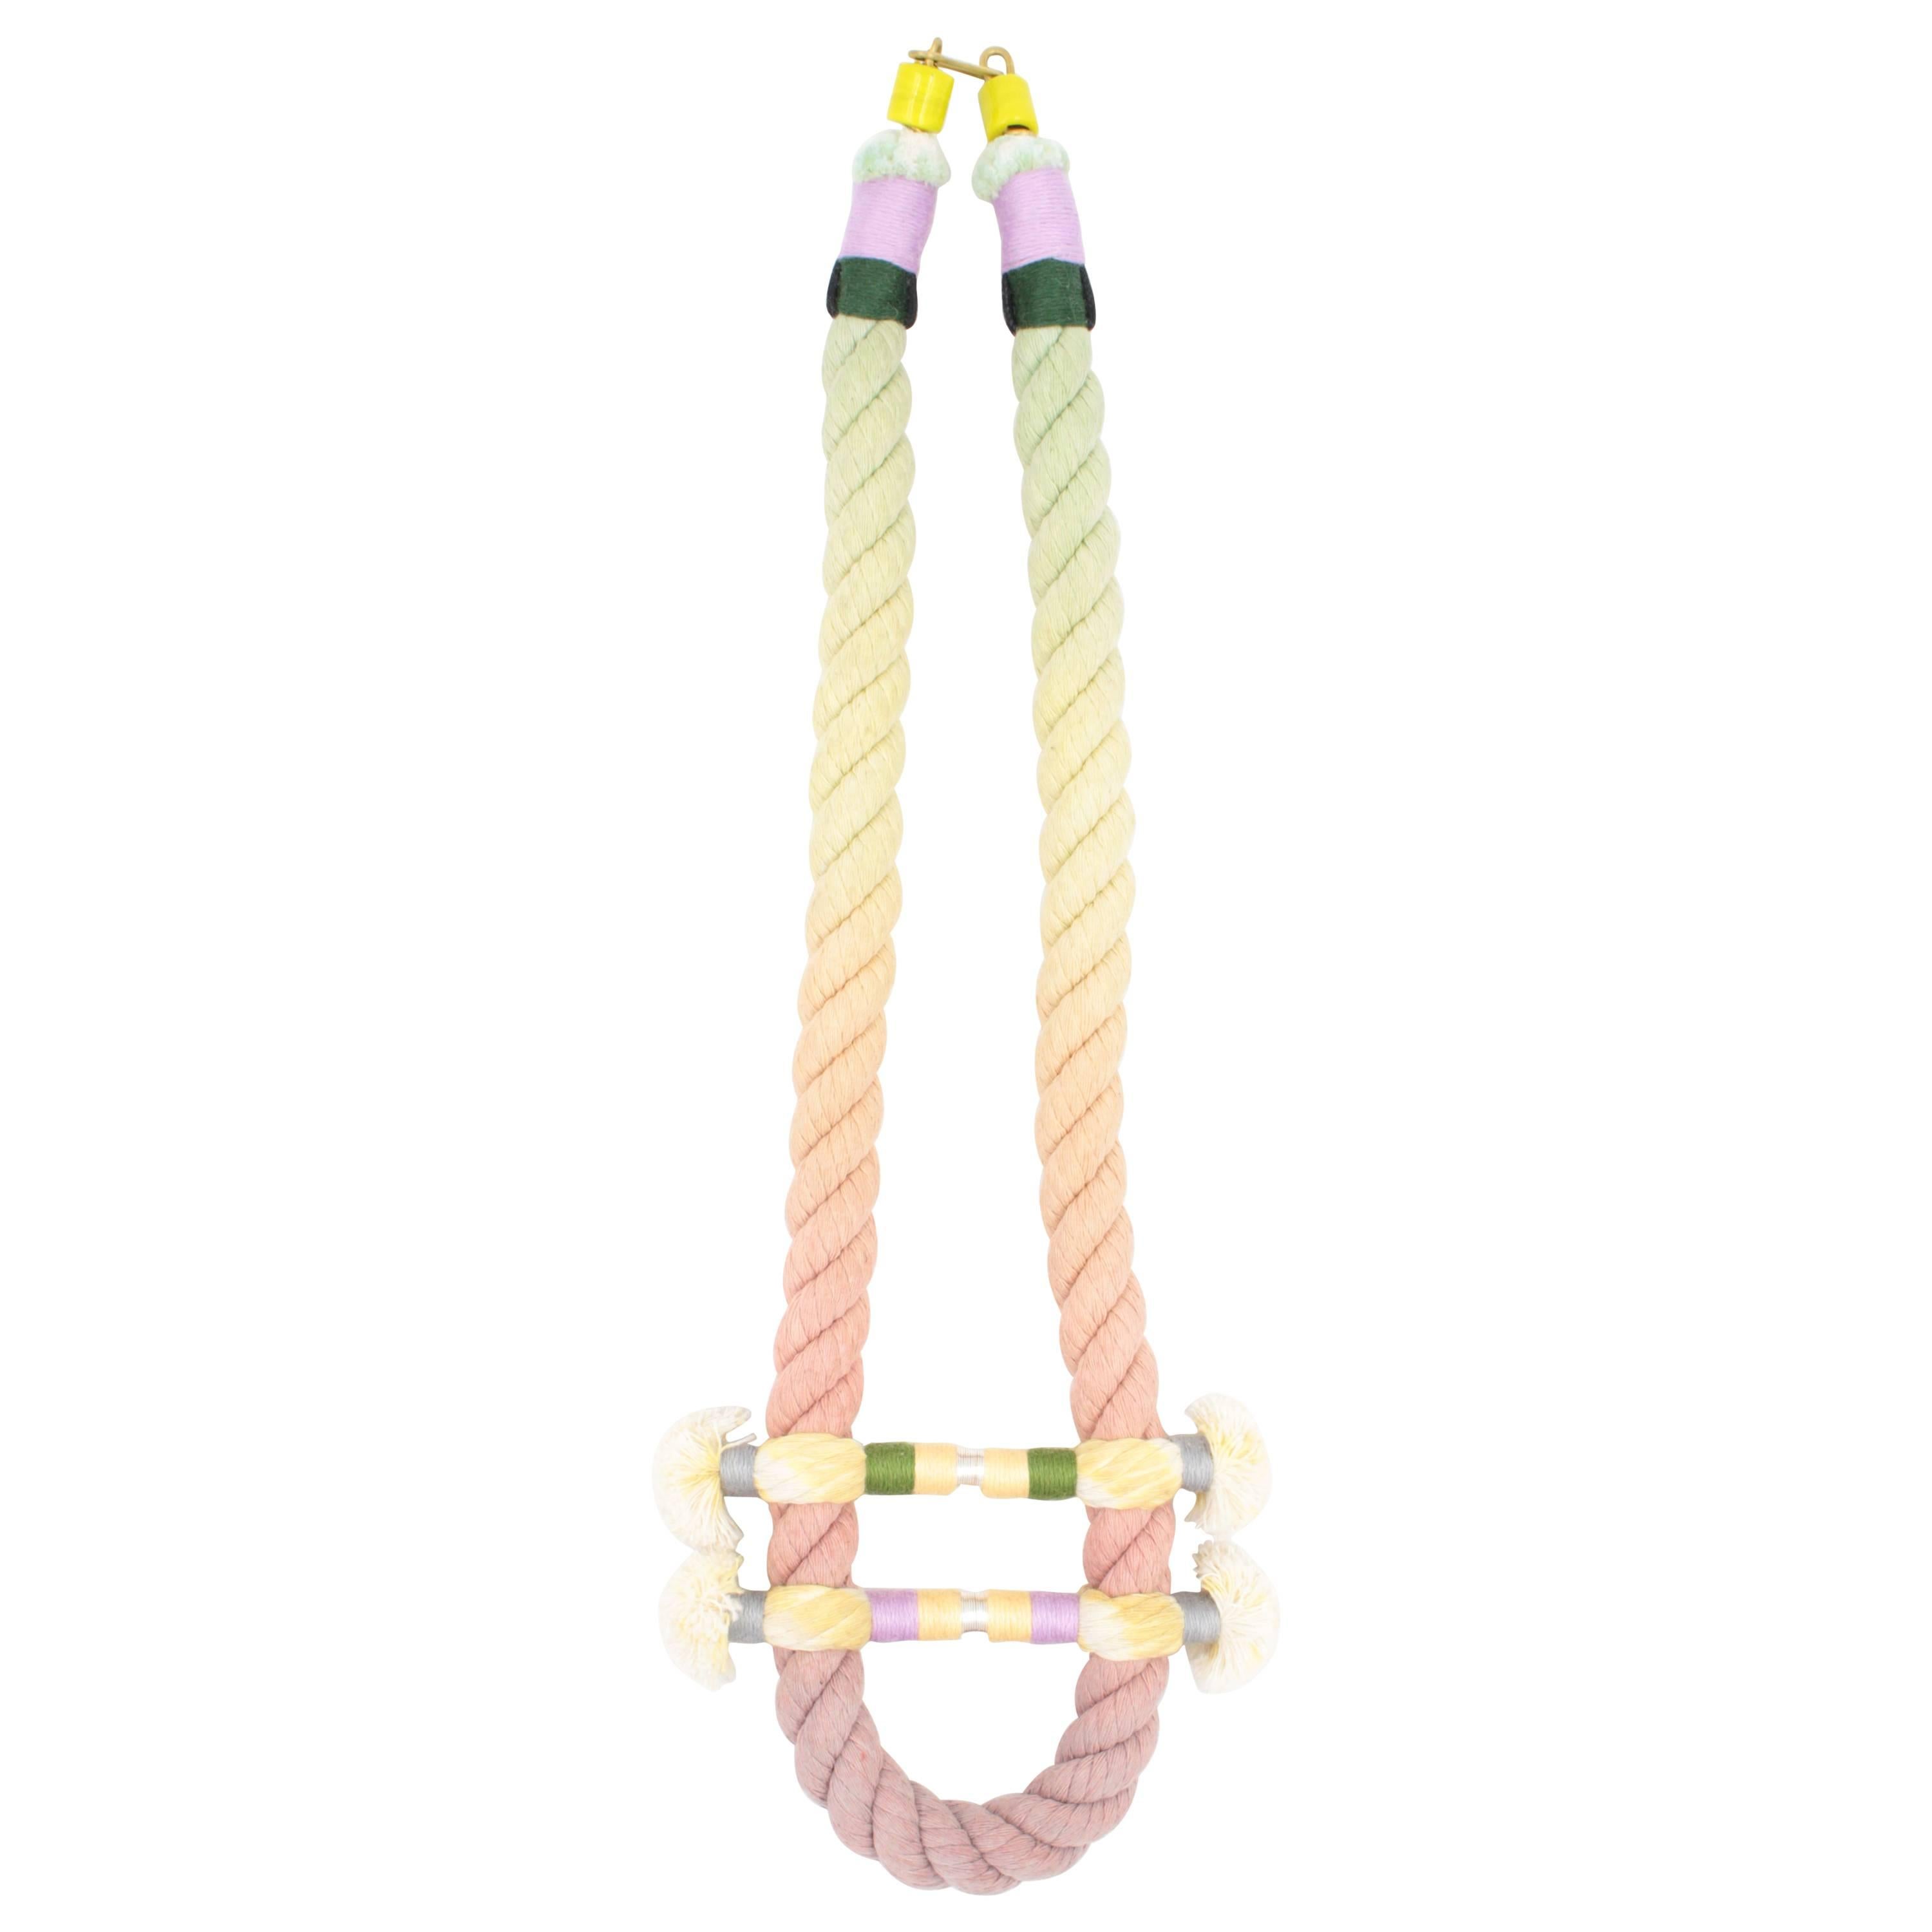 Split Rope Necklace (Lavender/Green/Orange) For Sale